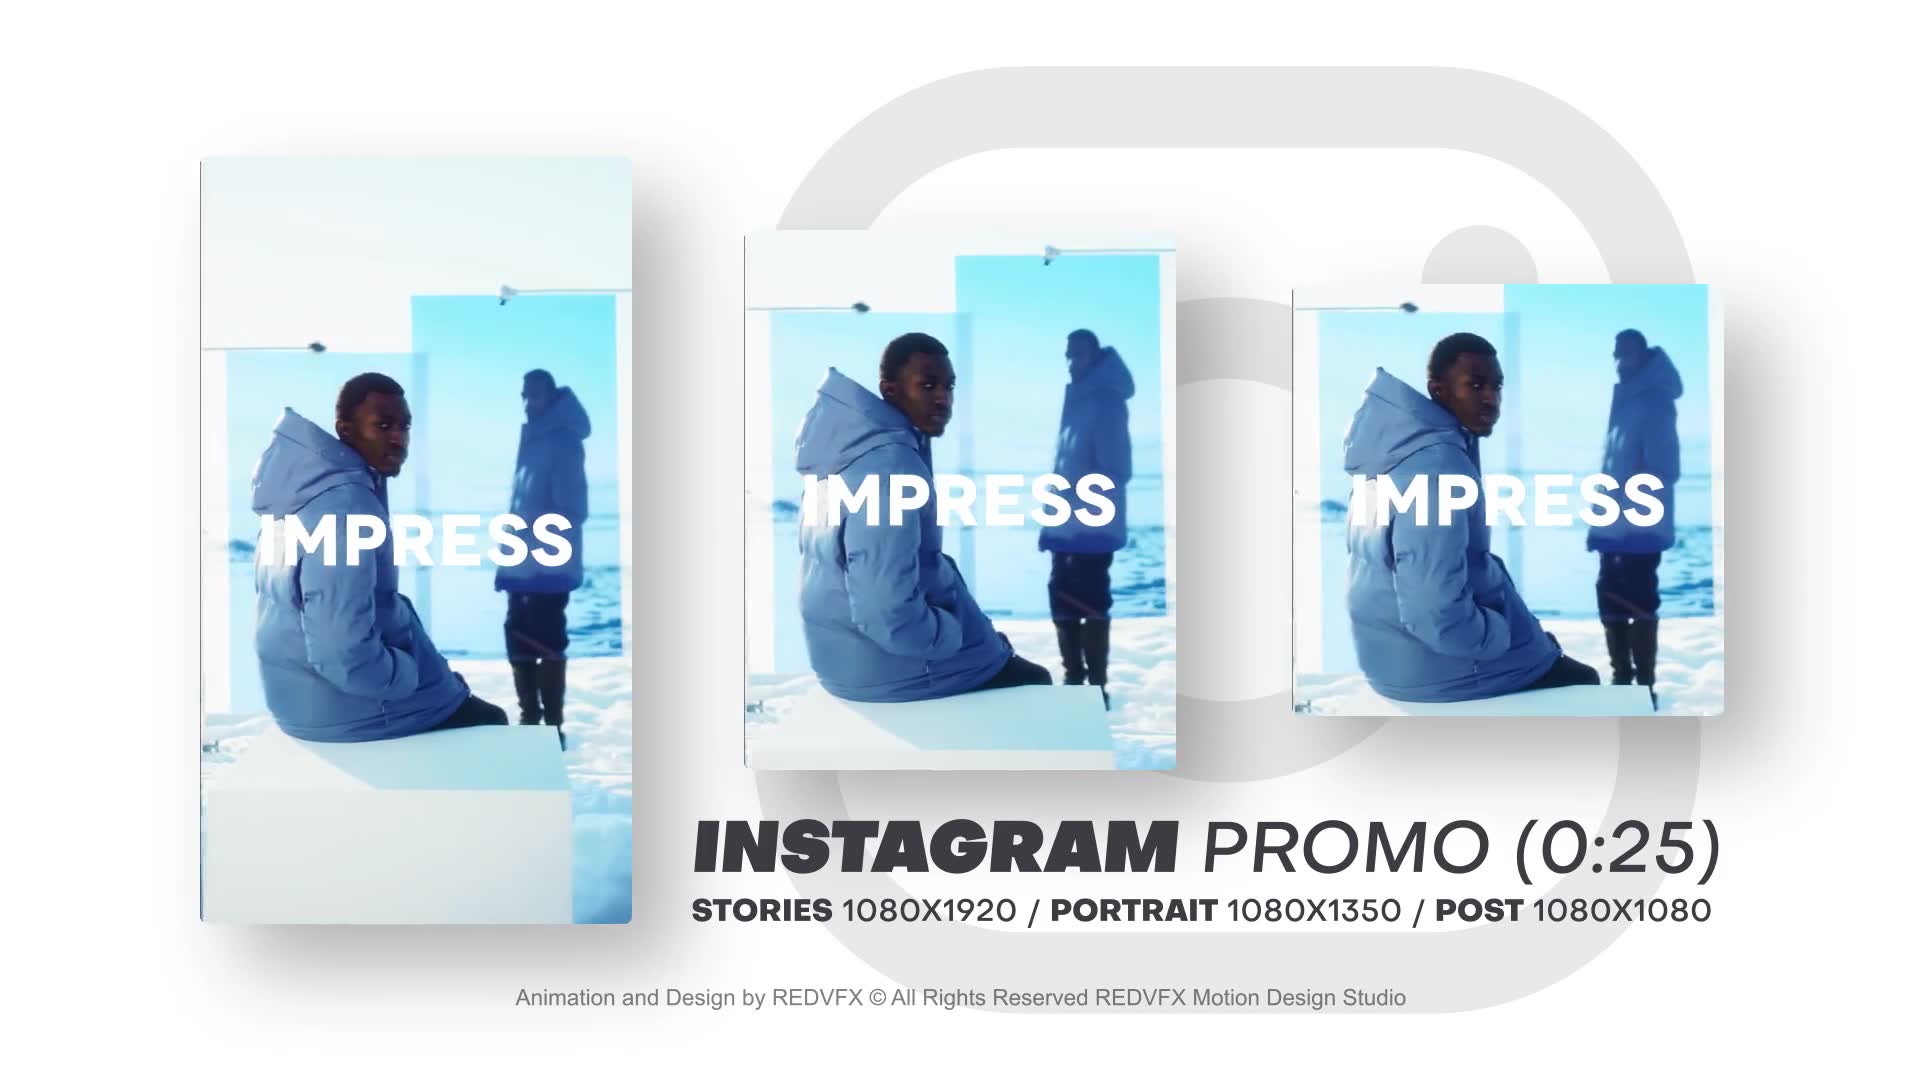 Instagram Promo for Premiere Pro Videohive 36478083 Premiere Pro Image 2